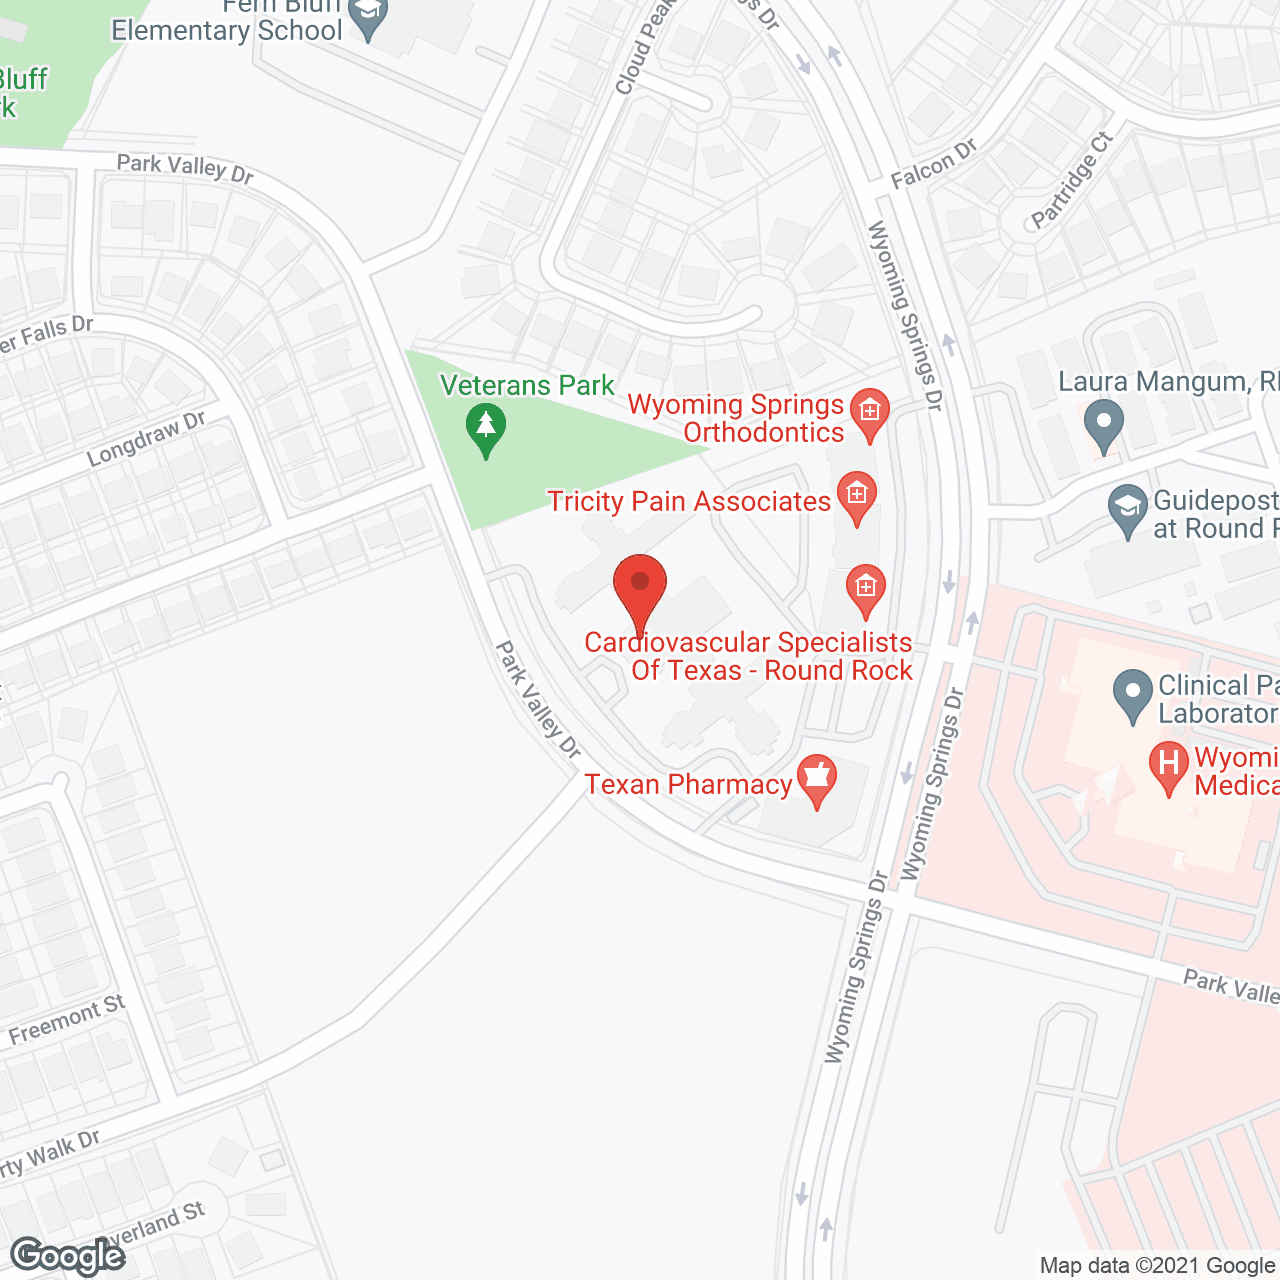 Park Valley Inn Health Center in google map